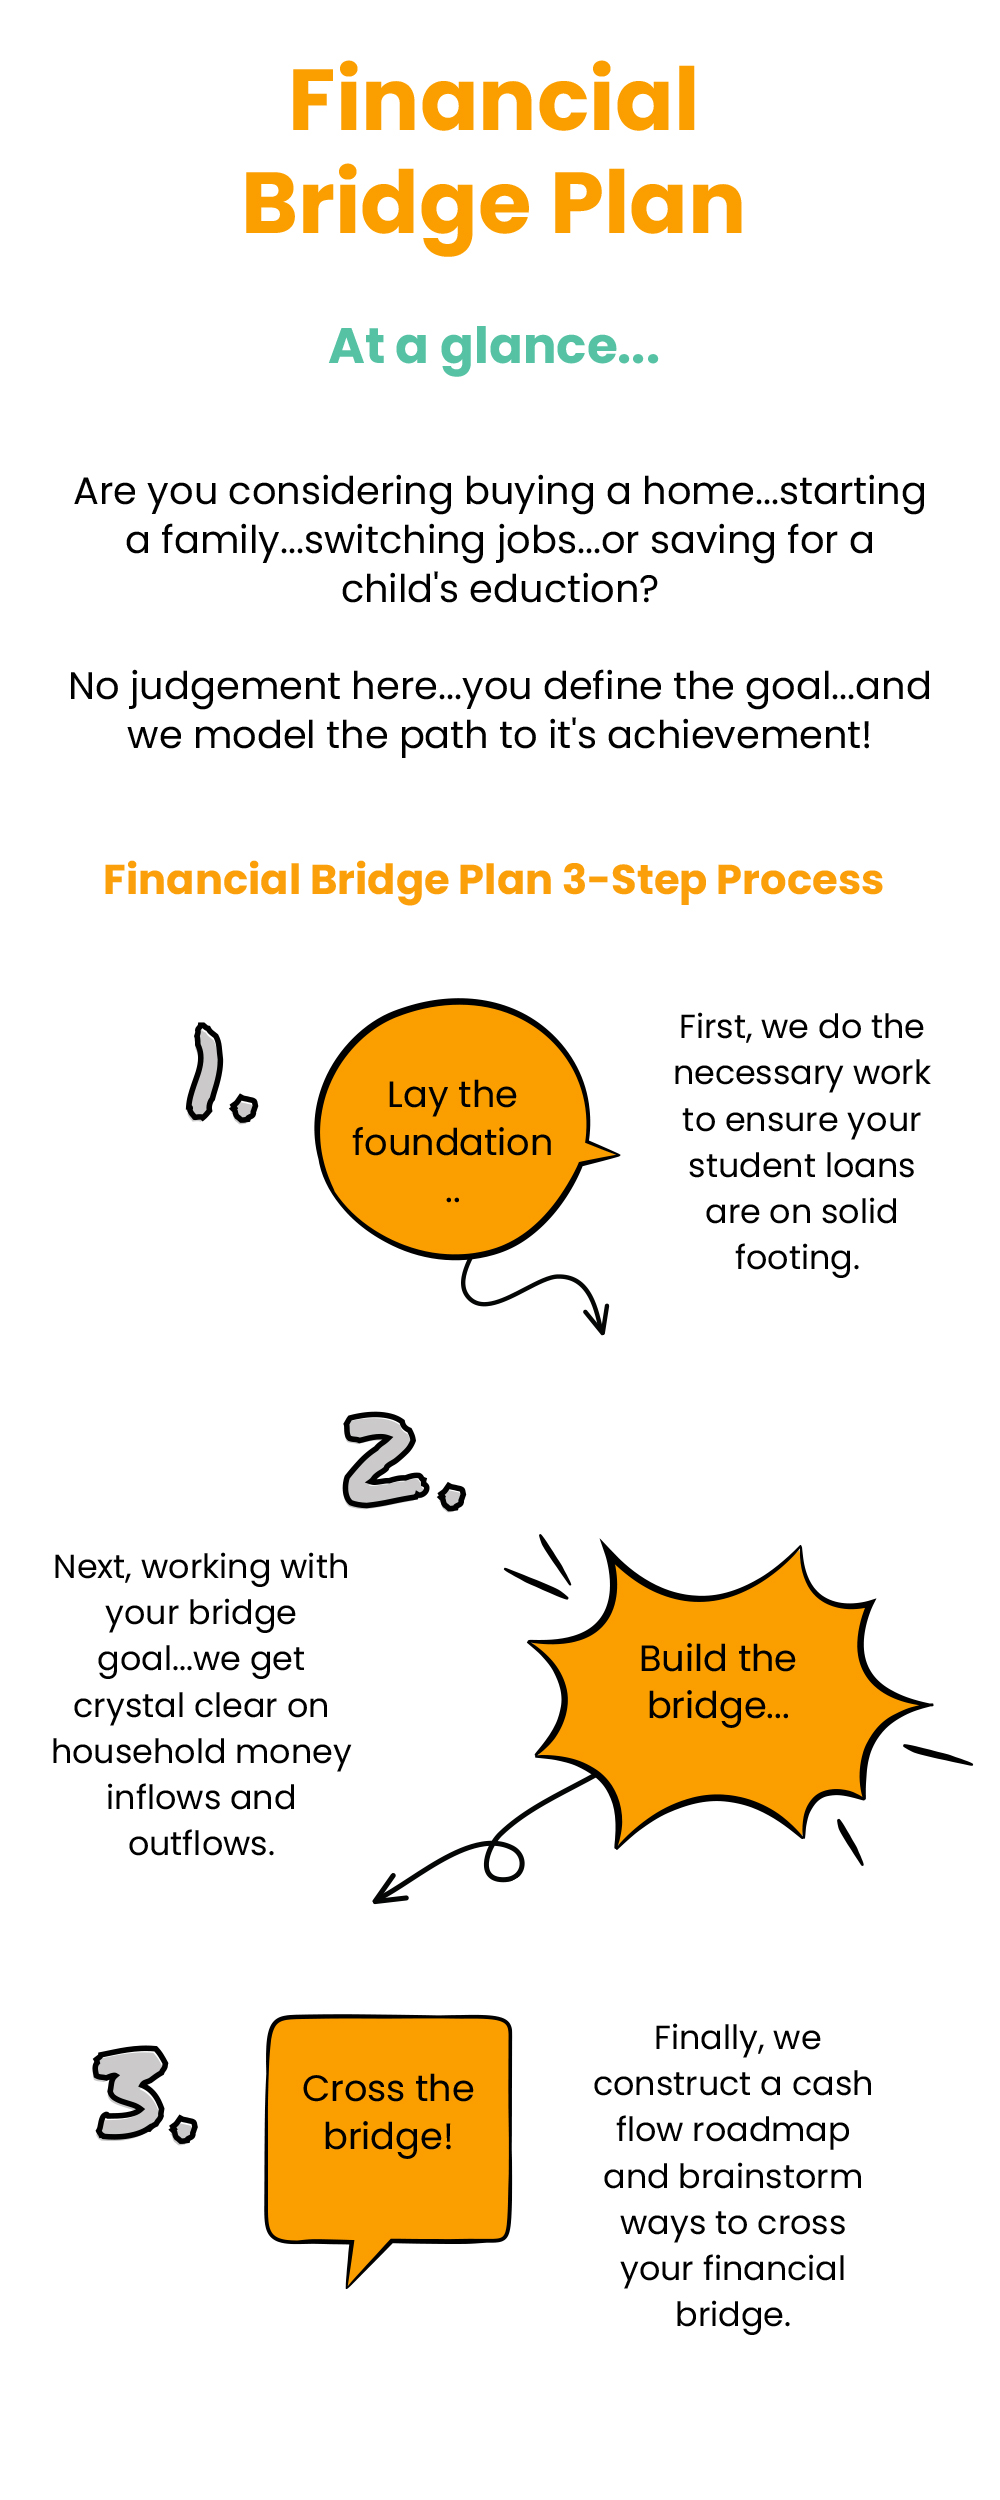 Financial Bridge Plan...at a Glance